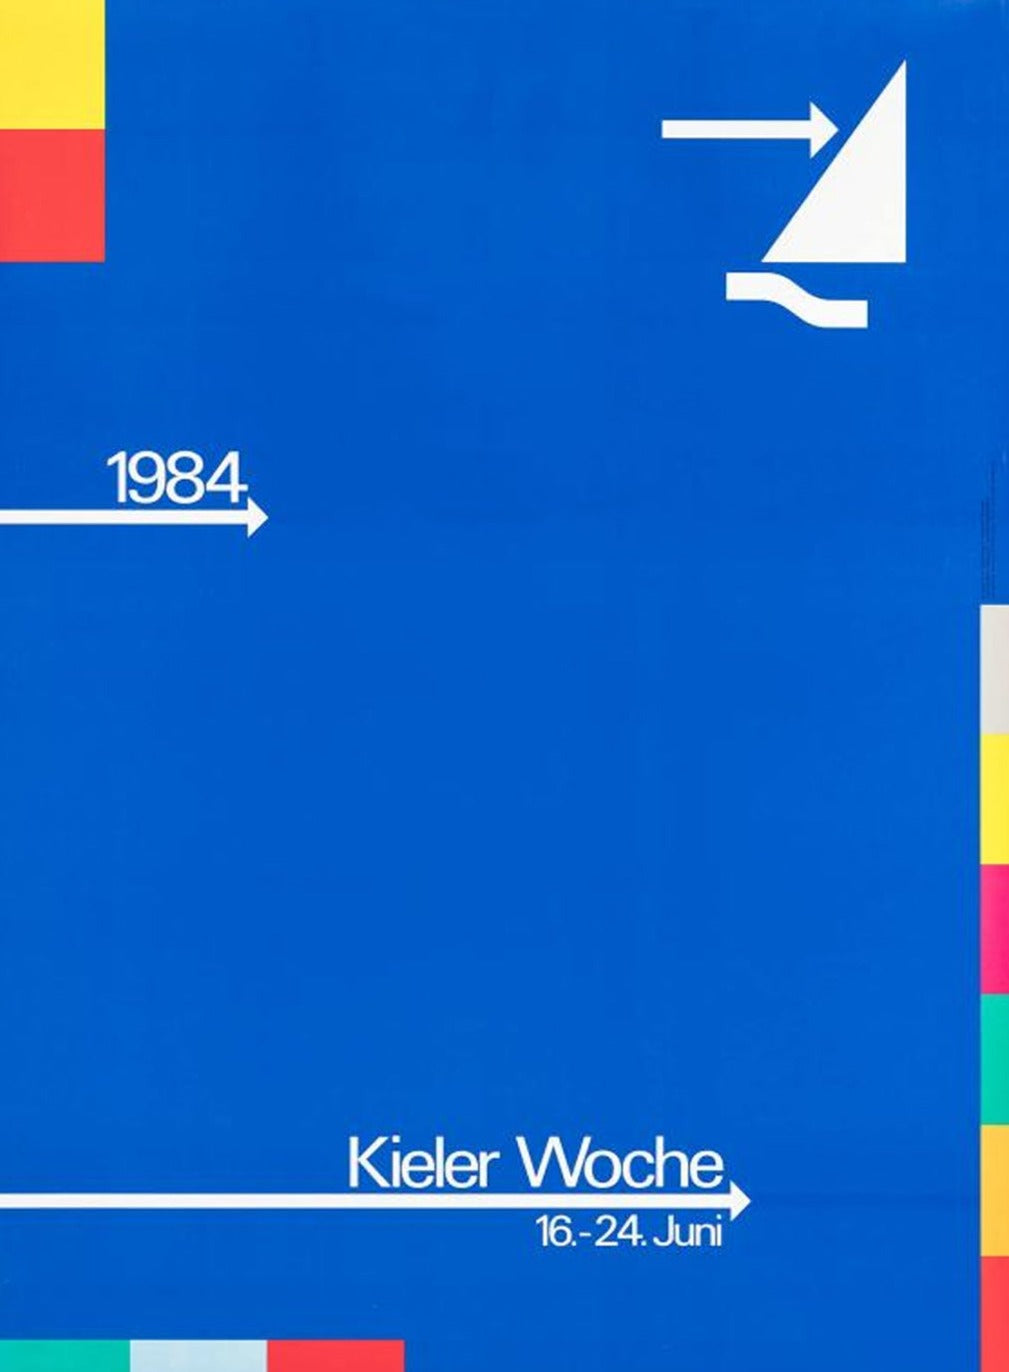 Kiel Week (Kieler Woche) 1984